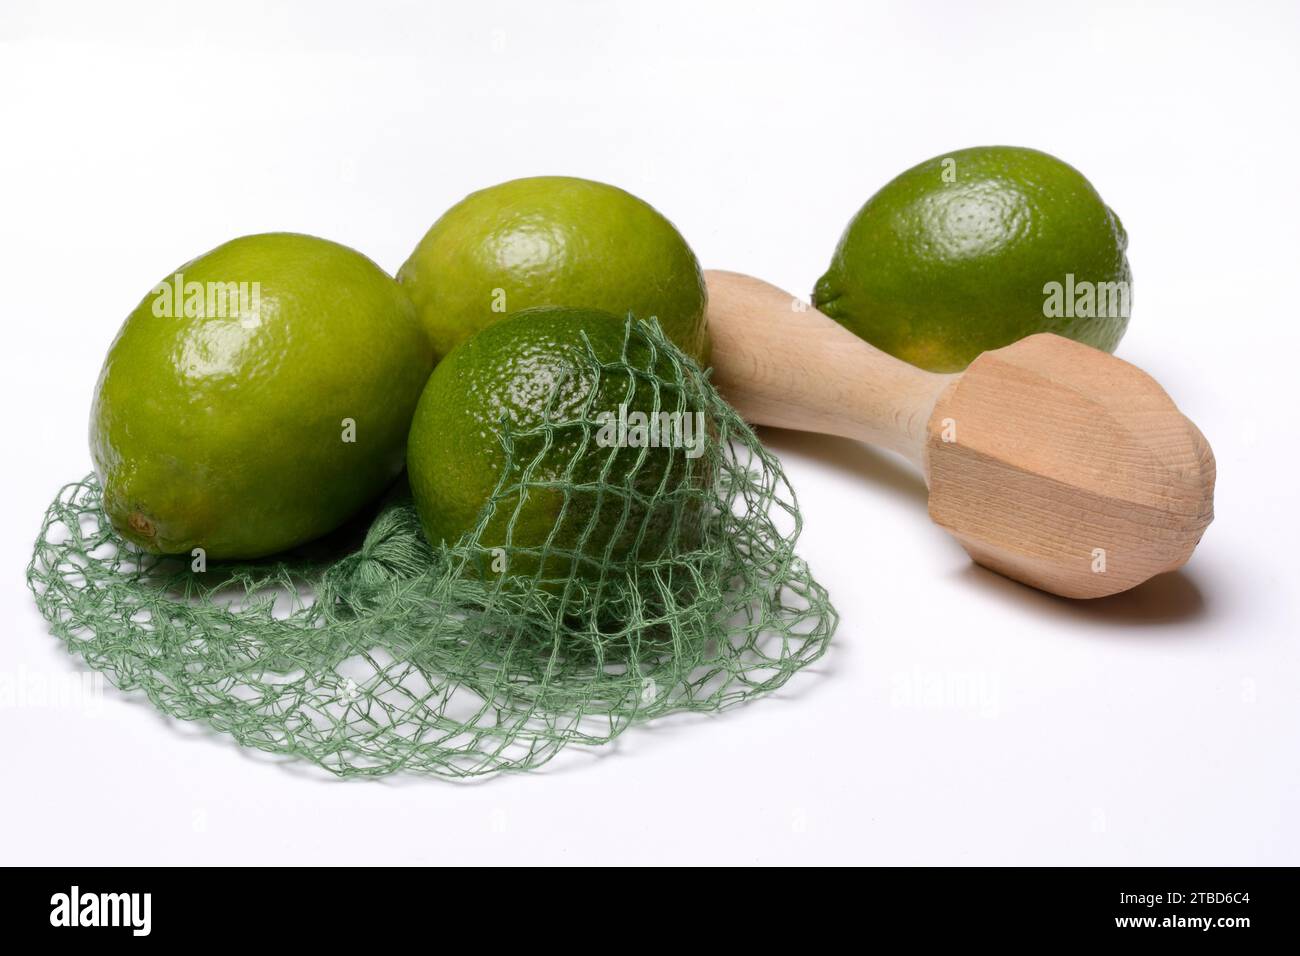 Citrons verts avec presse-agrumes, agrumes Banque D'Images